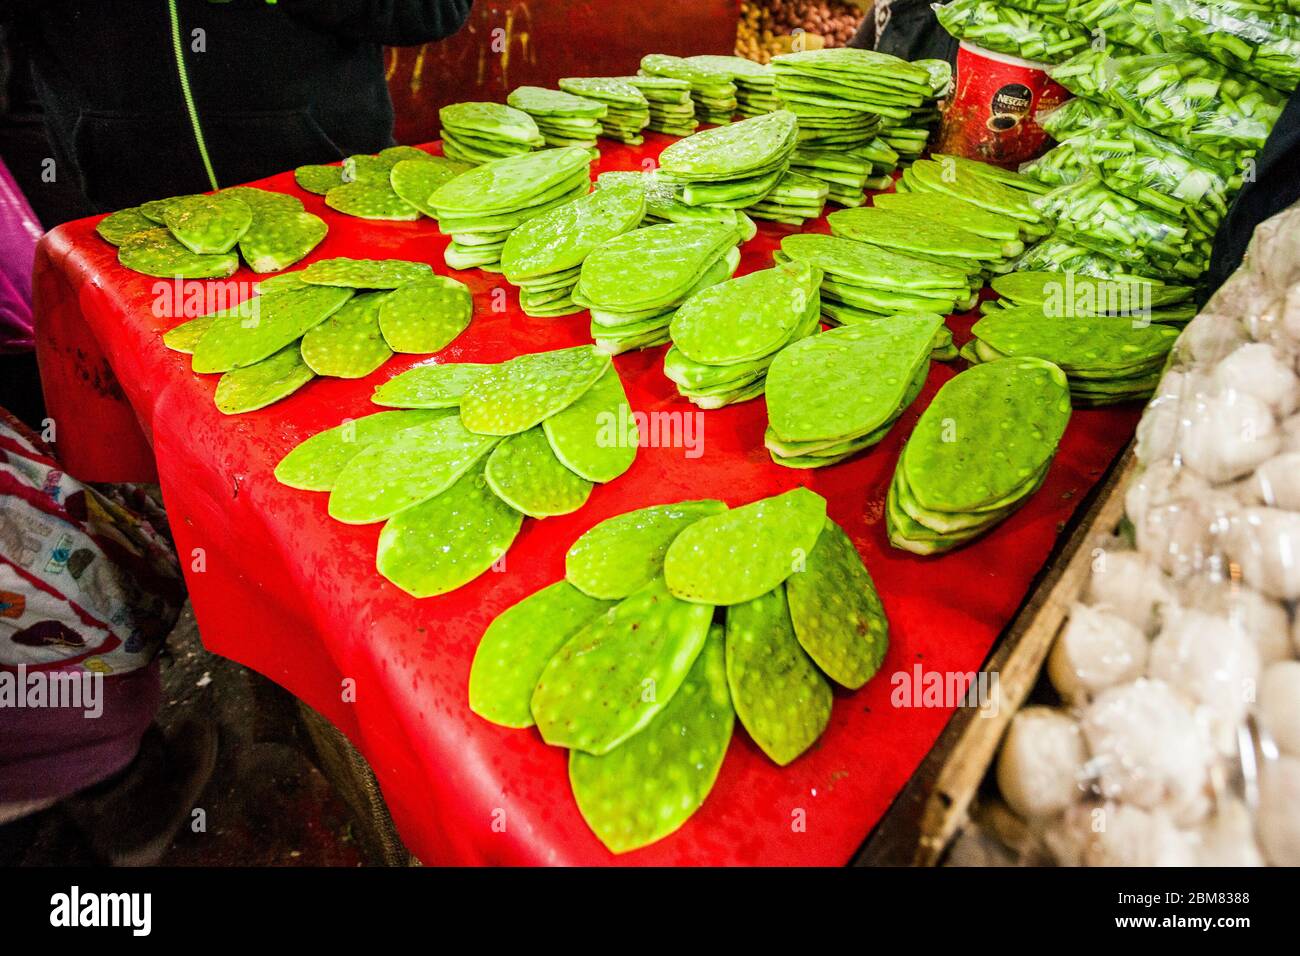 Gereinigt und frisch nopales zum Verkauf in Marktladen Lebensmittel Stockfoto